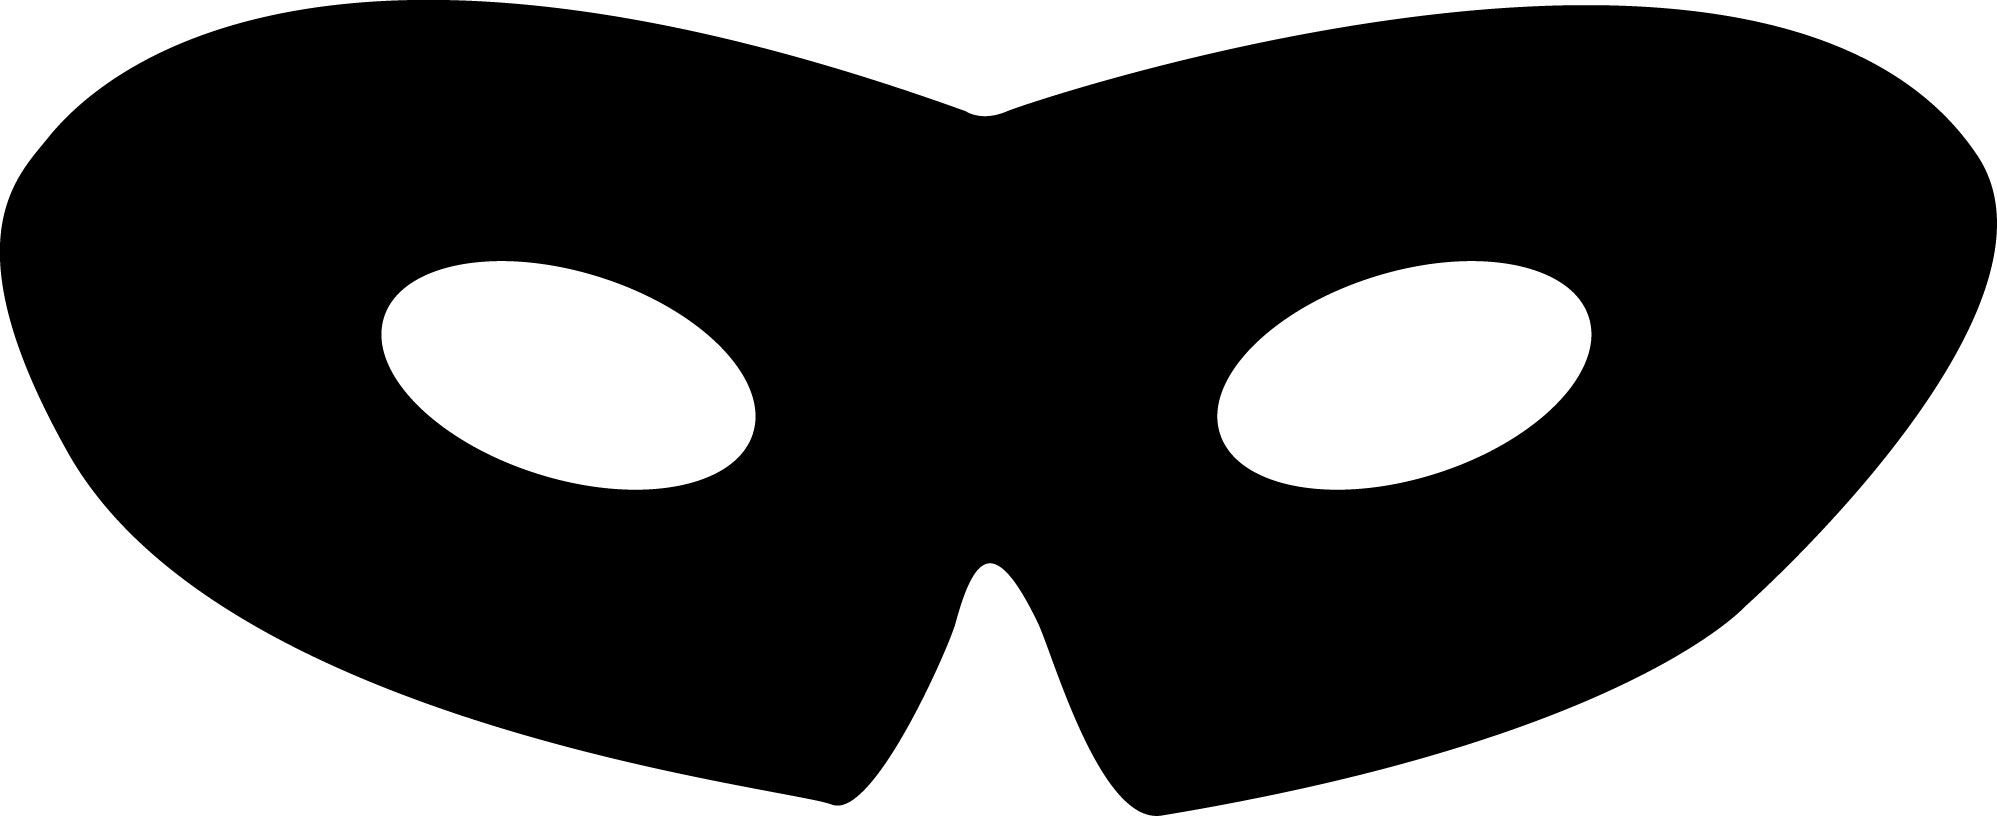 Mascara Do Zorro De Papel Para Imprimir E Recortar - Carnaval dedans Masque De Zorro À Imprimer 